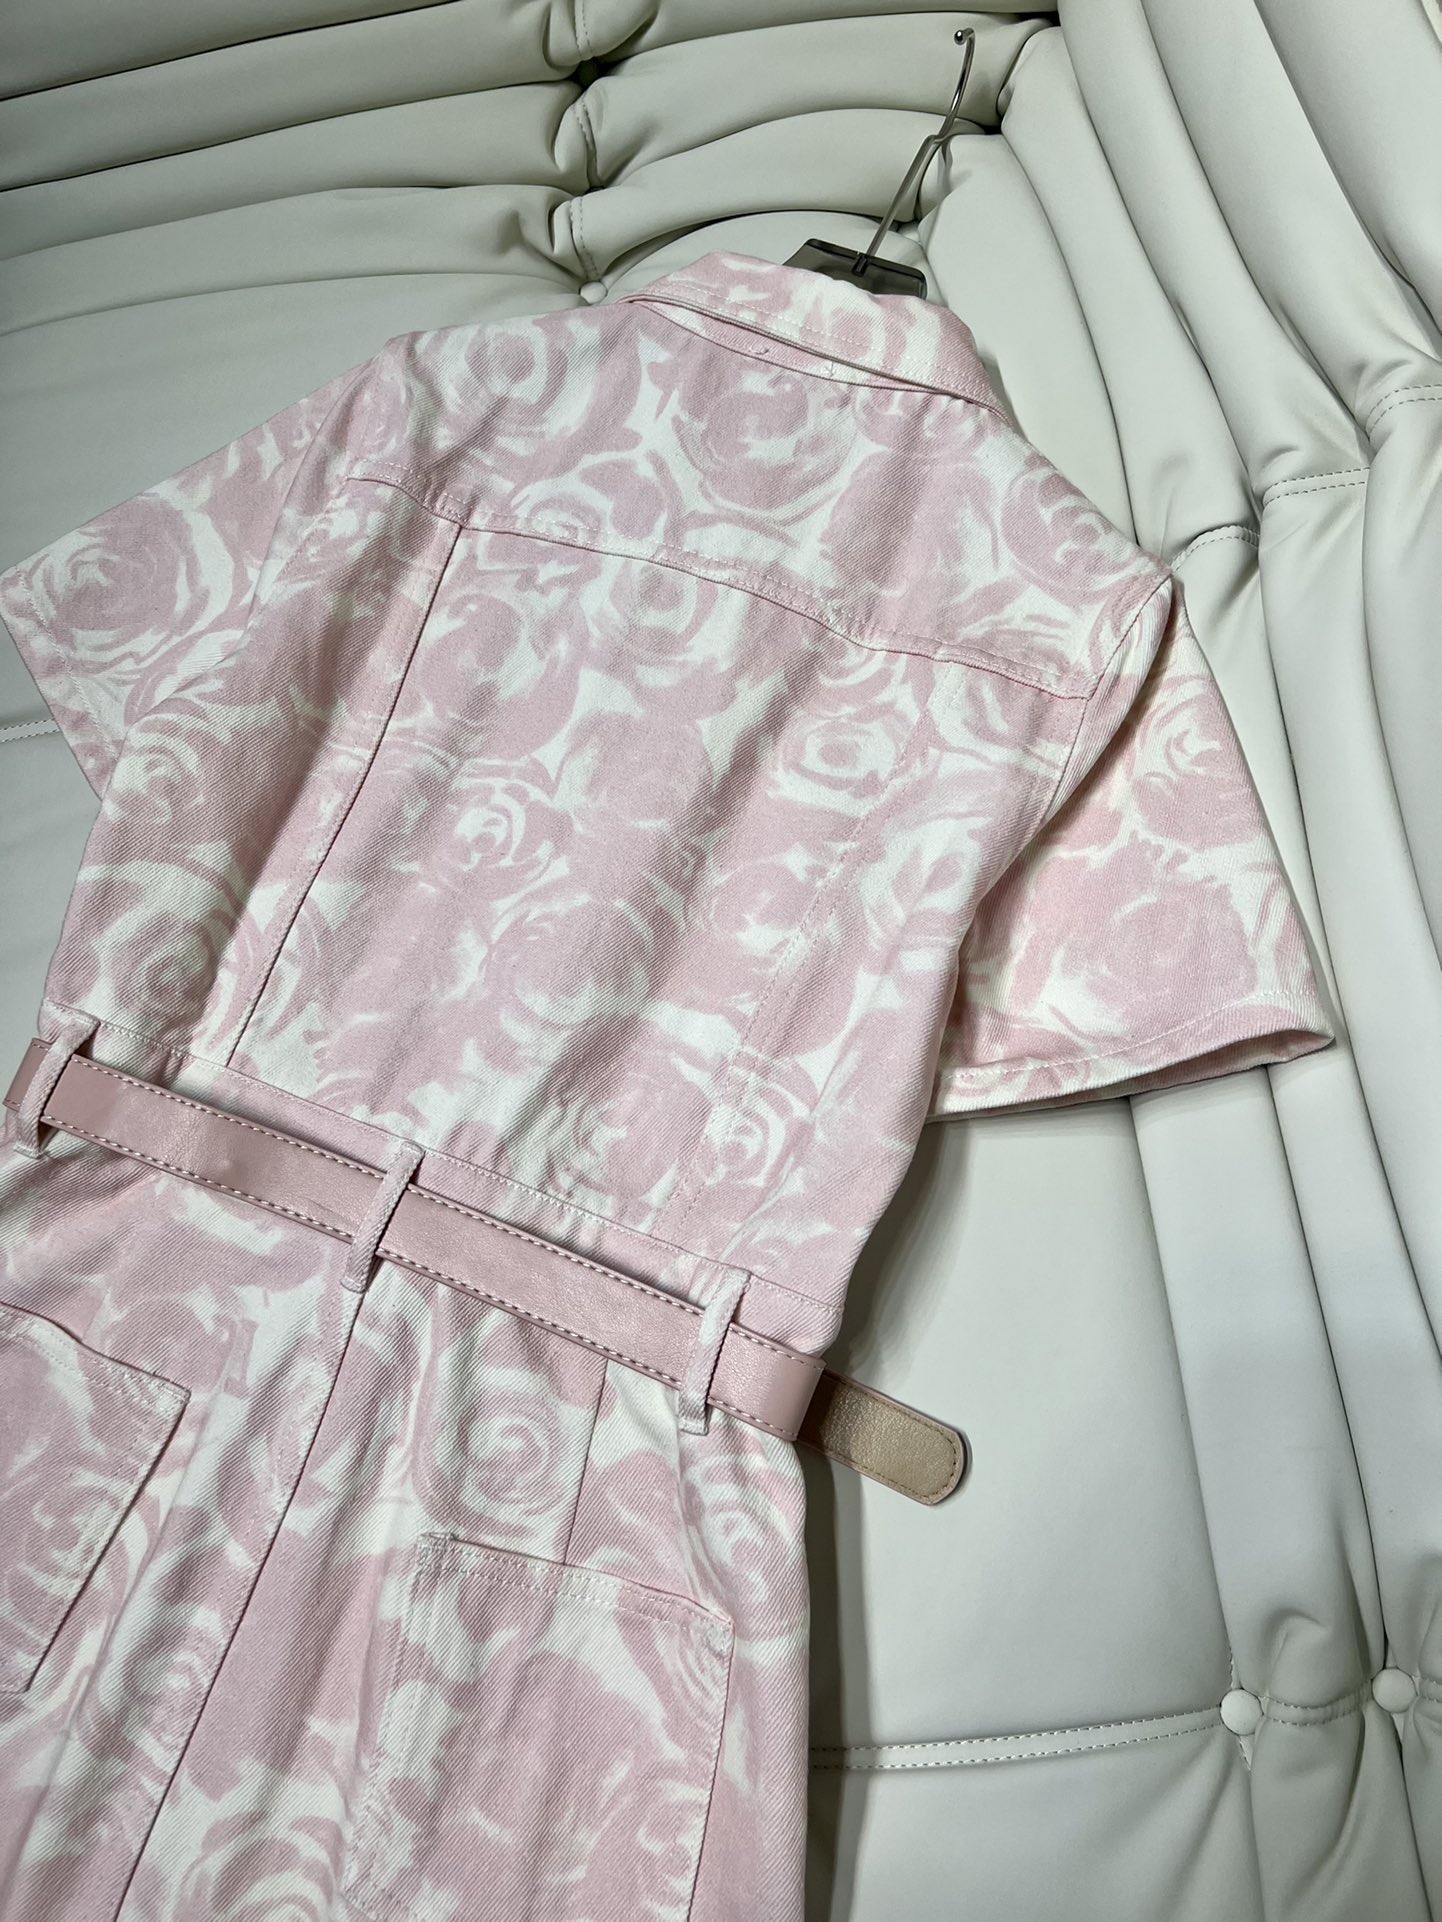 存在感のある バーバリースカートサイズ偽物 ワンピース 半袖 花柄 通勤 レディース 品質保証 ファッション ピンク_5